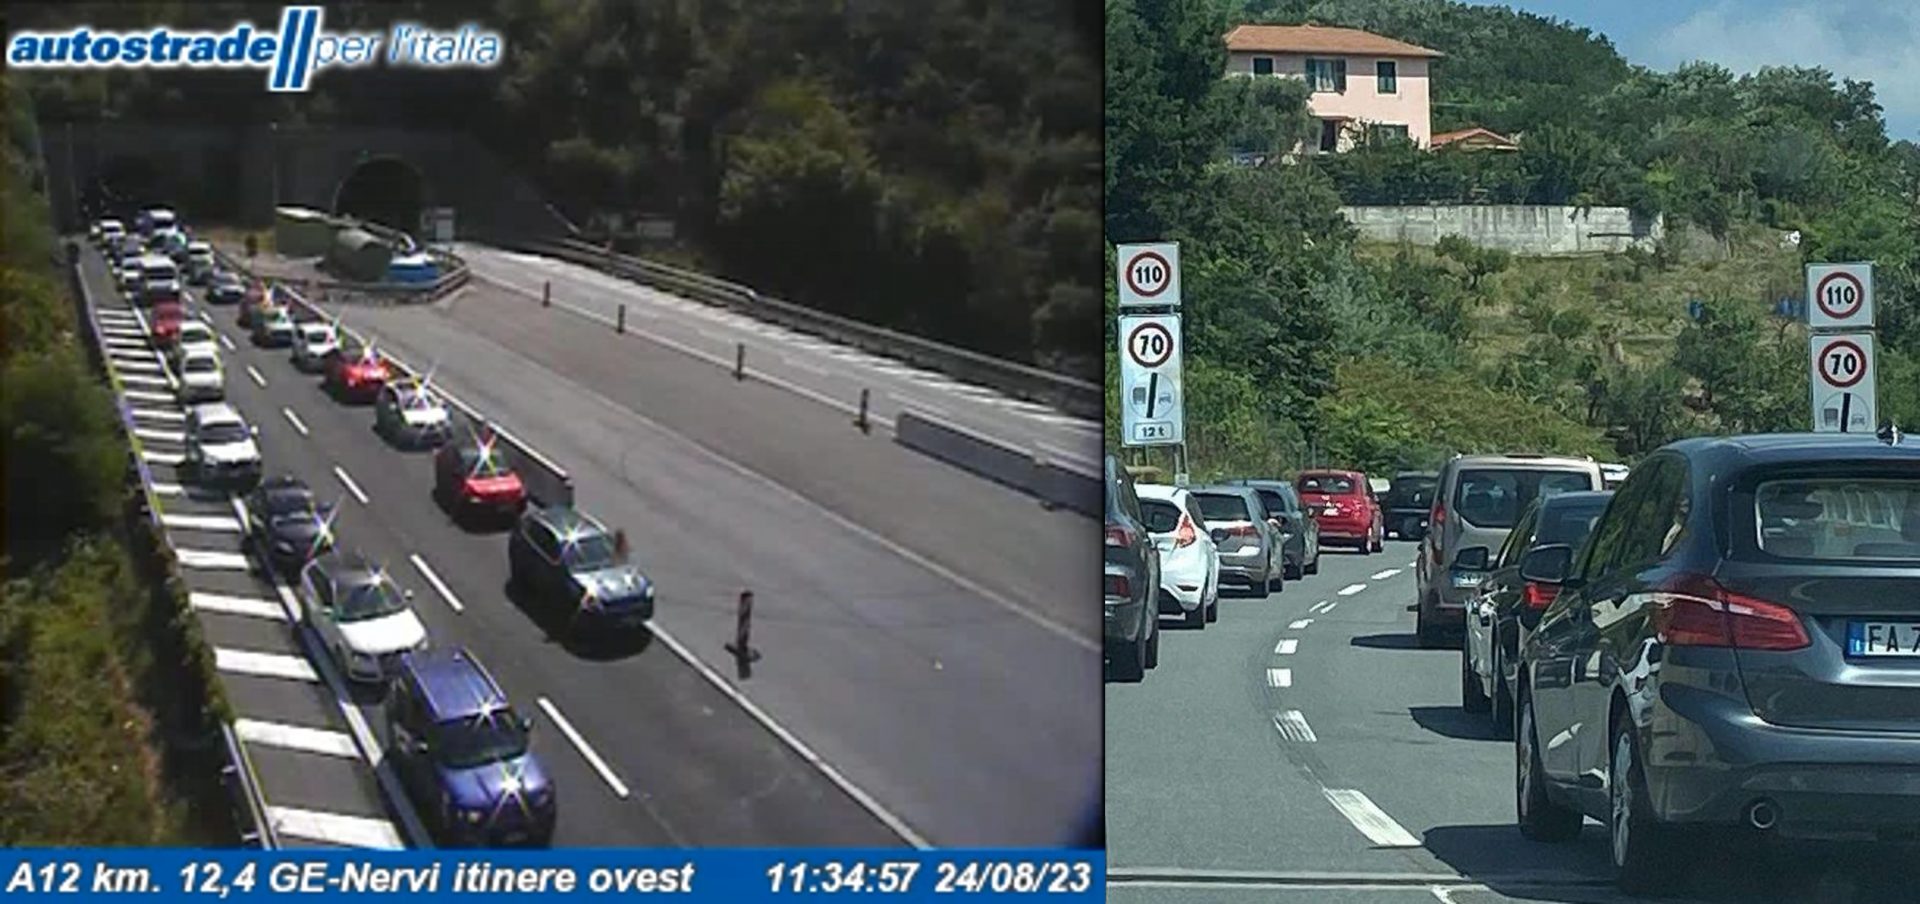 Sulla autostrada A7 si registrano 3 km di coda verso Milano tra Bolzaneto e Busalla a causa della riduzione di carreggiata; sulla A12, in direzione Genova, un incidente al km 15 sta provocando una coda di 1 Km in aumento nel tratto Recco - Genova Nervi.